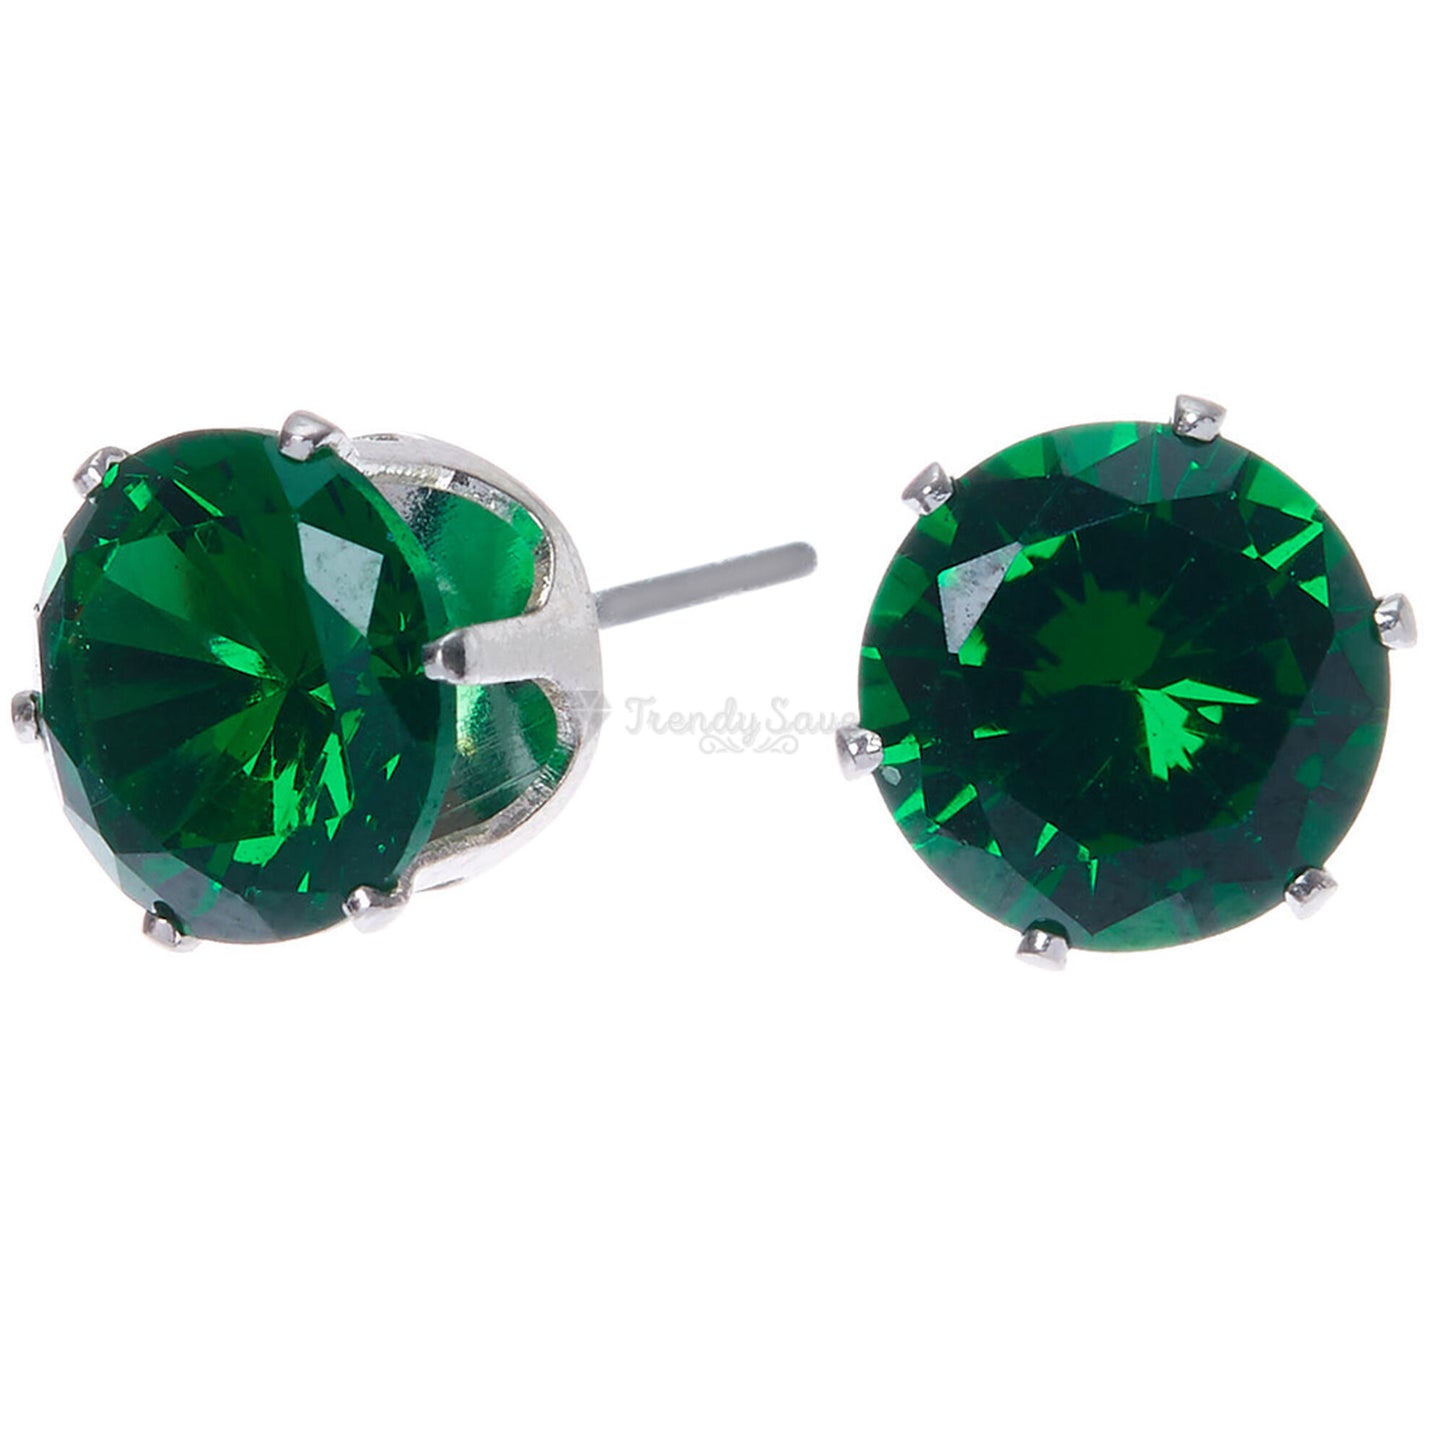 6MM Wide Round Cut Green Cubic Zirconia Ear Stud Earrings Surgical Steel Jewelry